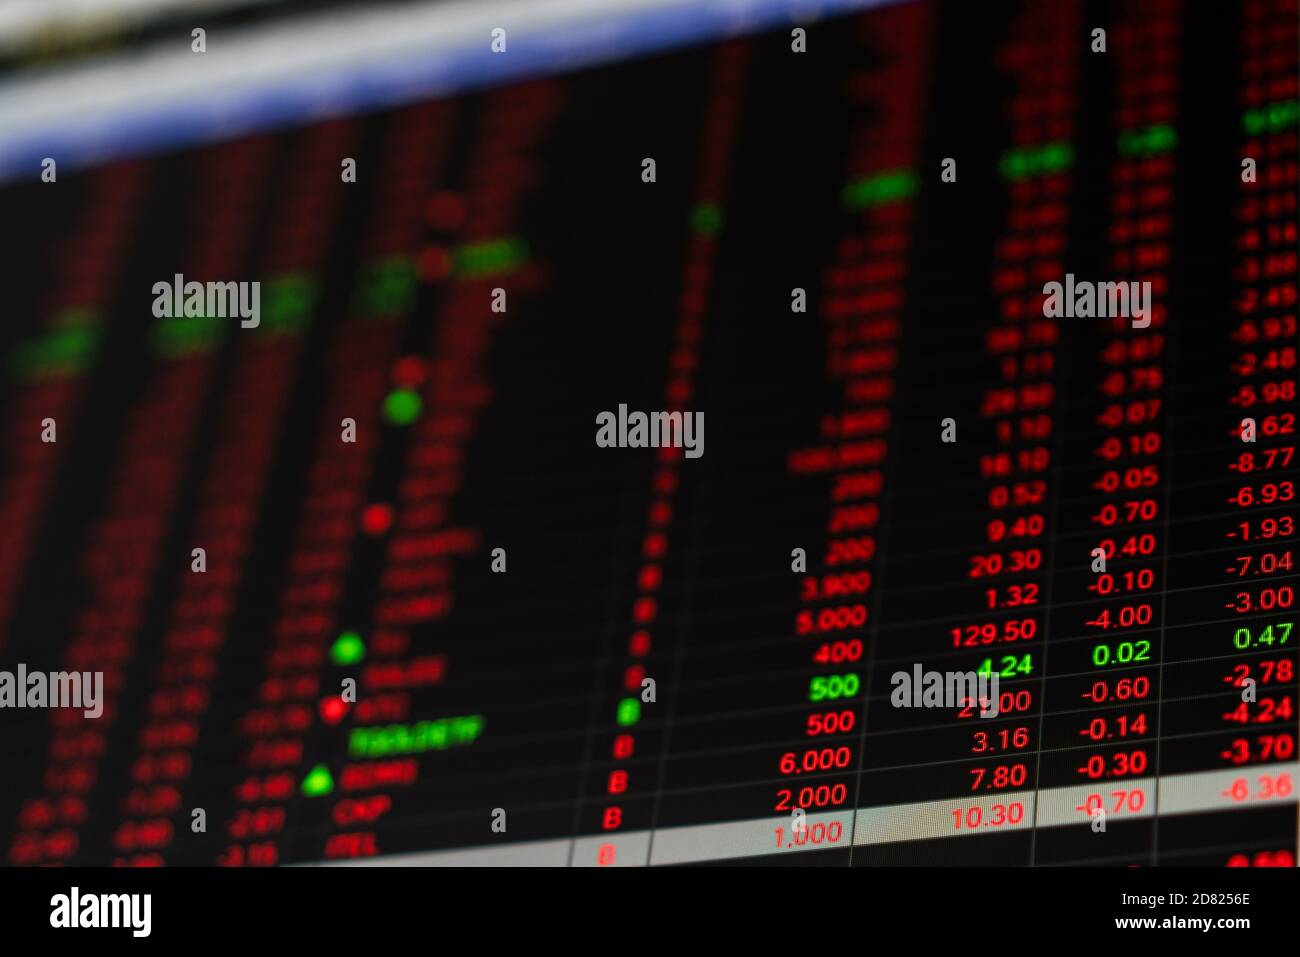 Börsenkurs Ticker Board in Baisse Börsentag. Aktienmarktausschuss zeigen Finanzkrise. Instabile nervöse Emotion der Aktienhändler Stockfoto